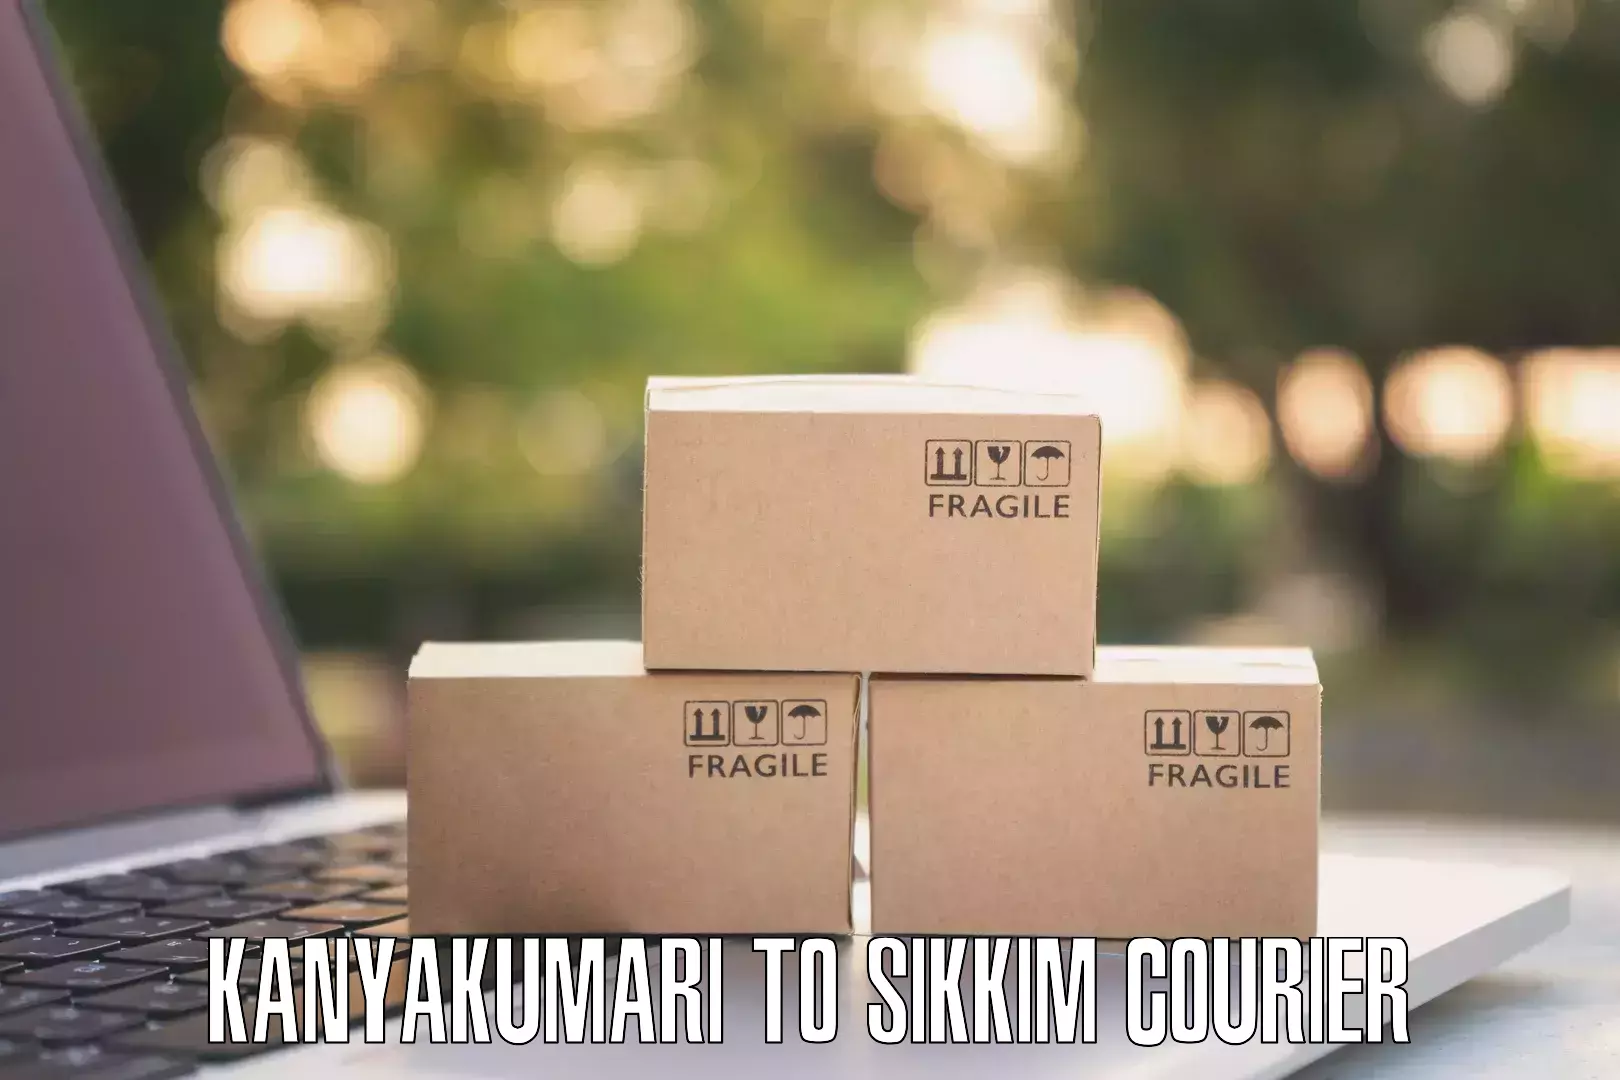 Custom courier packages Kanyakumari to Rangpo